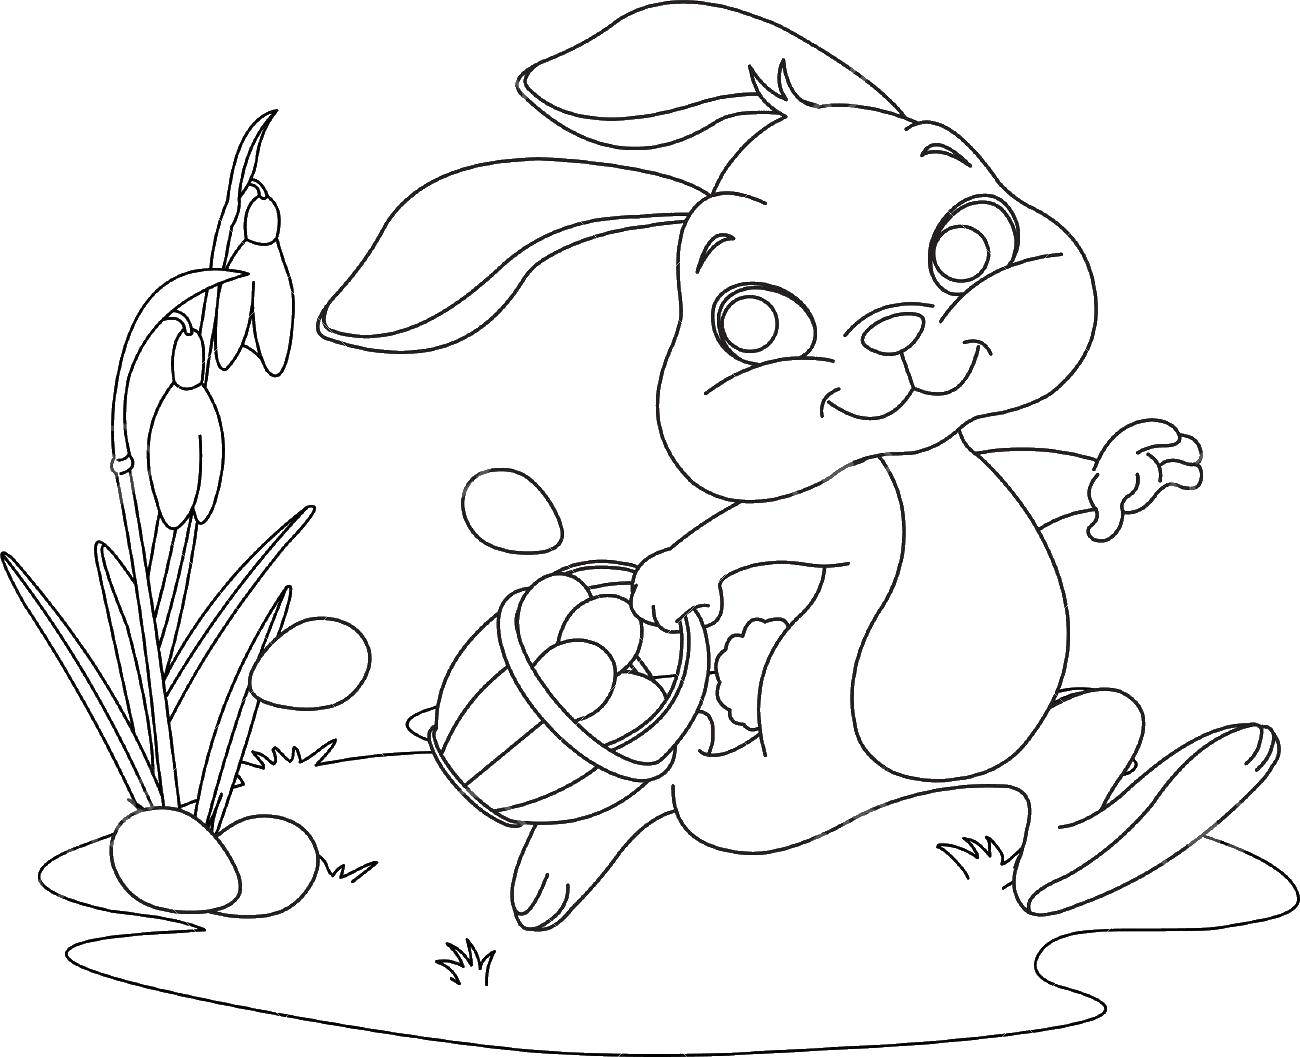 Название: Раскраска Кролик бежит с корзиной яиц по весенней лужайке с подснежниками. Категория: кролик. Теги: подснежник, корзина, яйца, кролик.